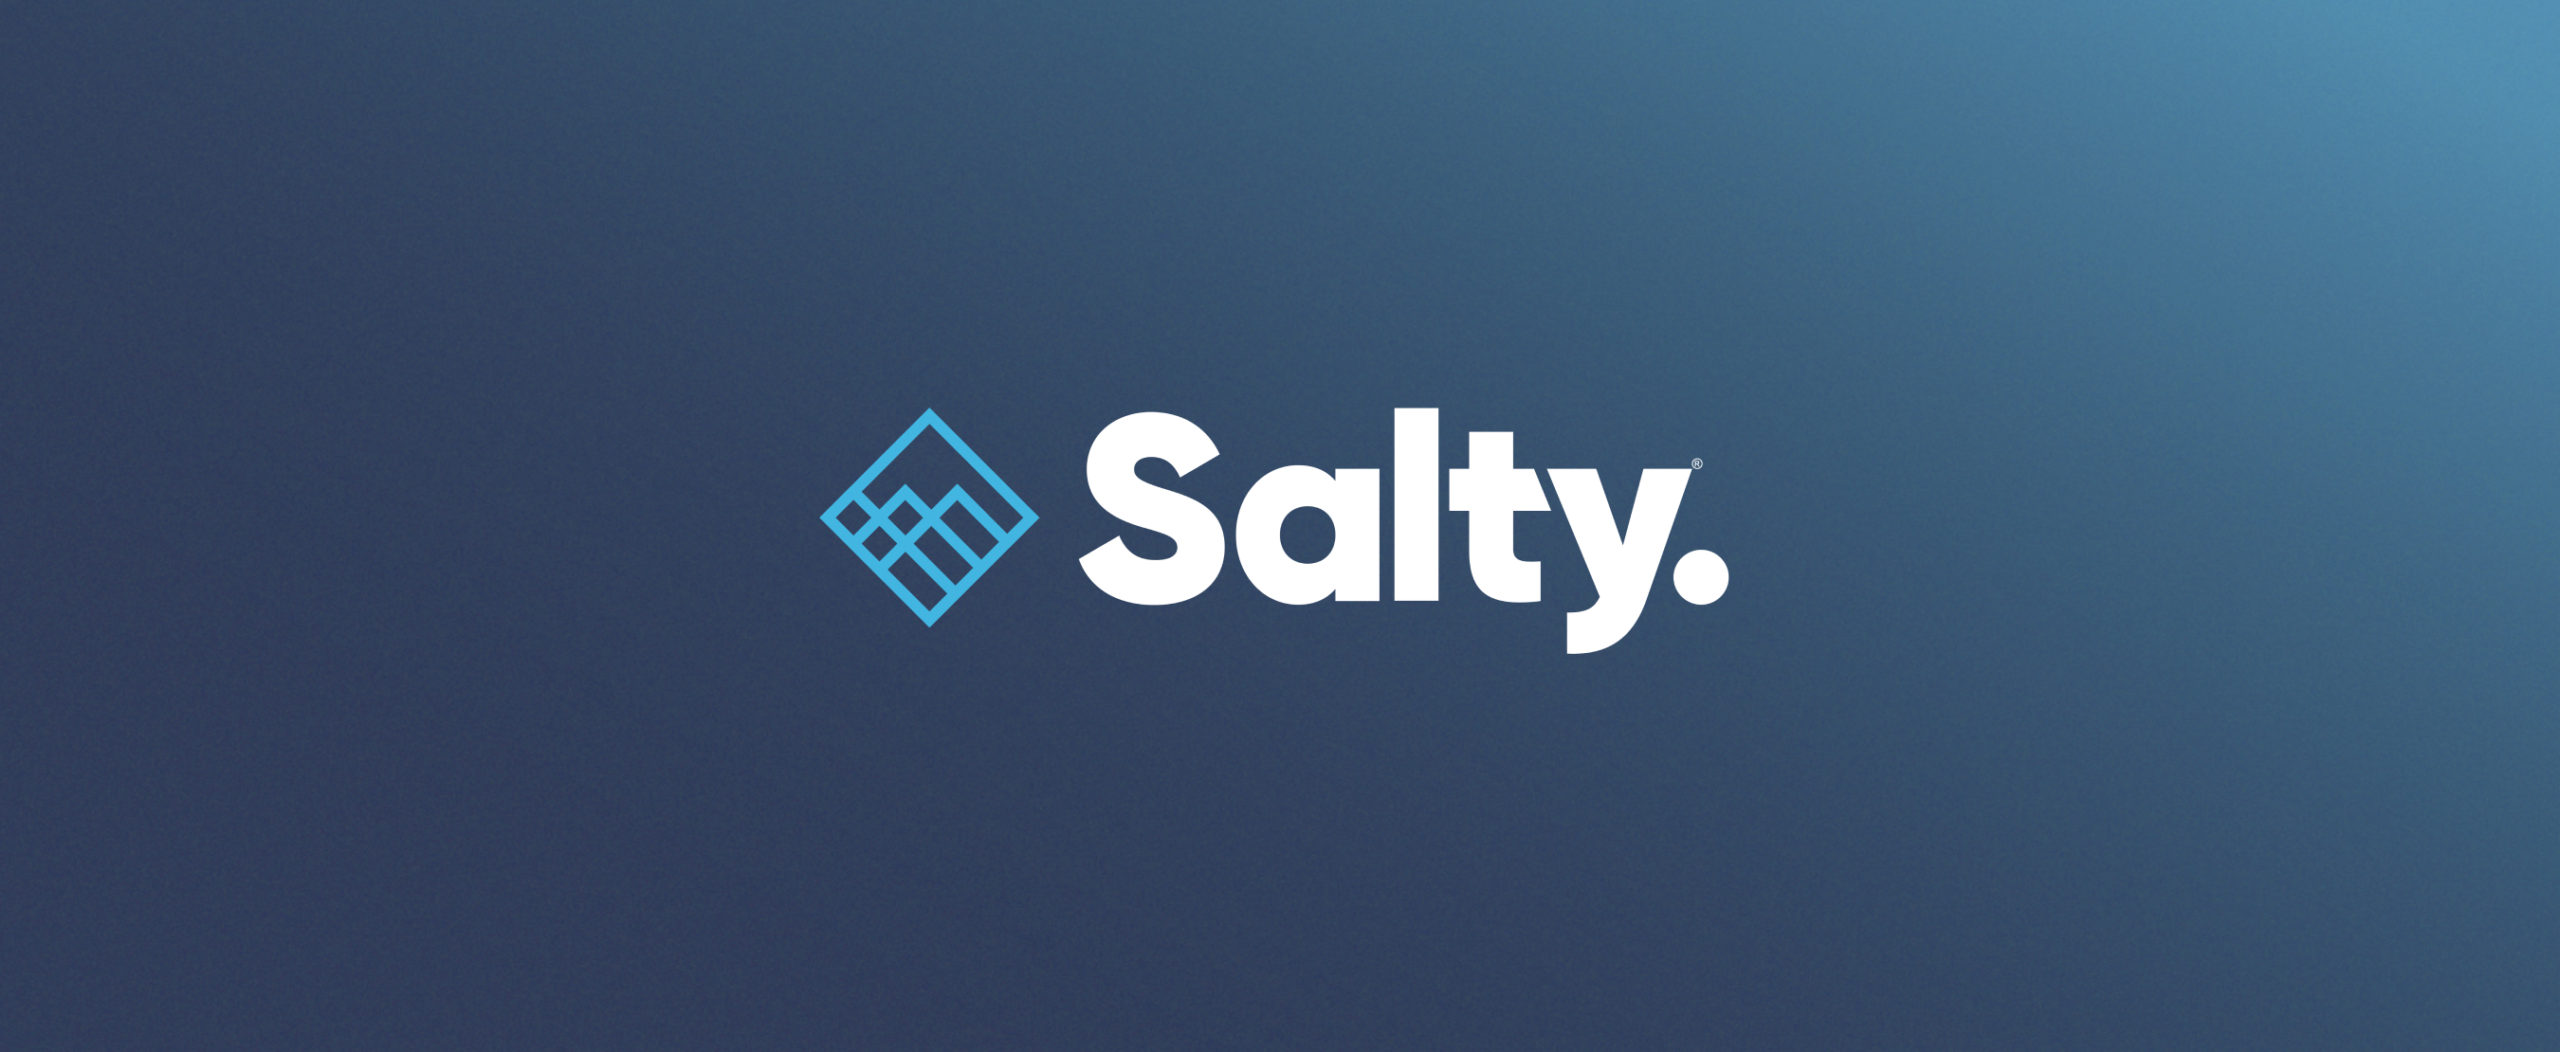 salty3